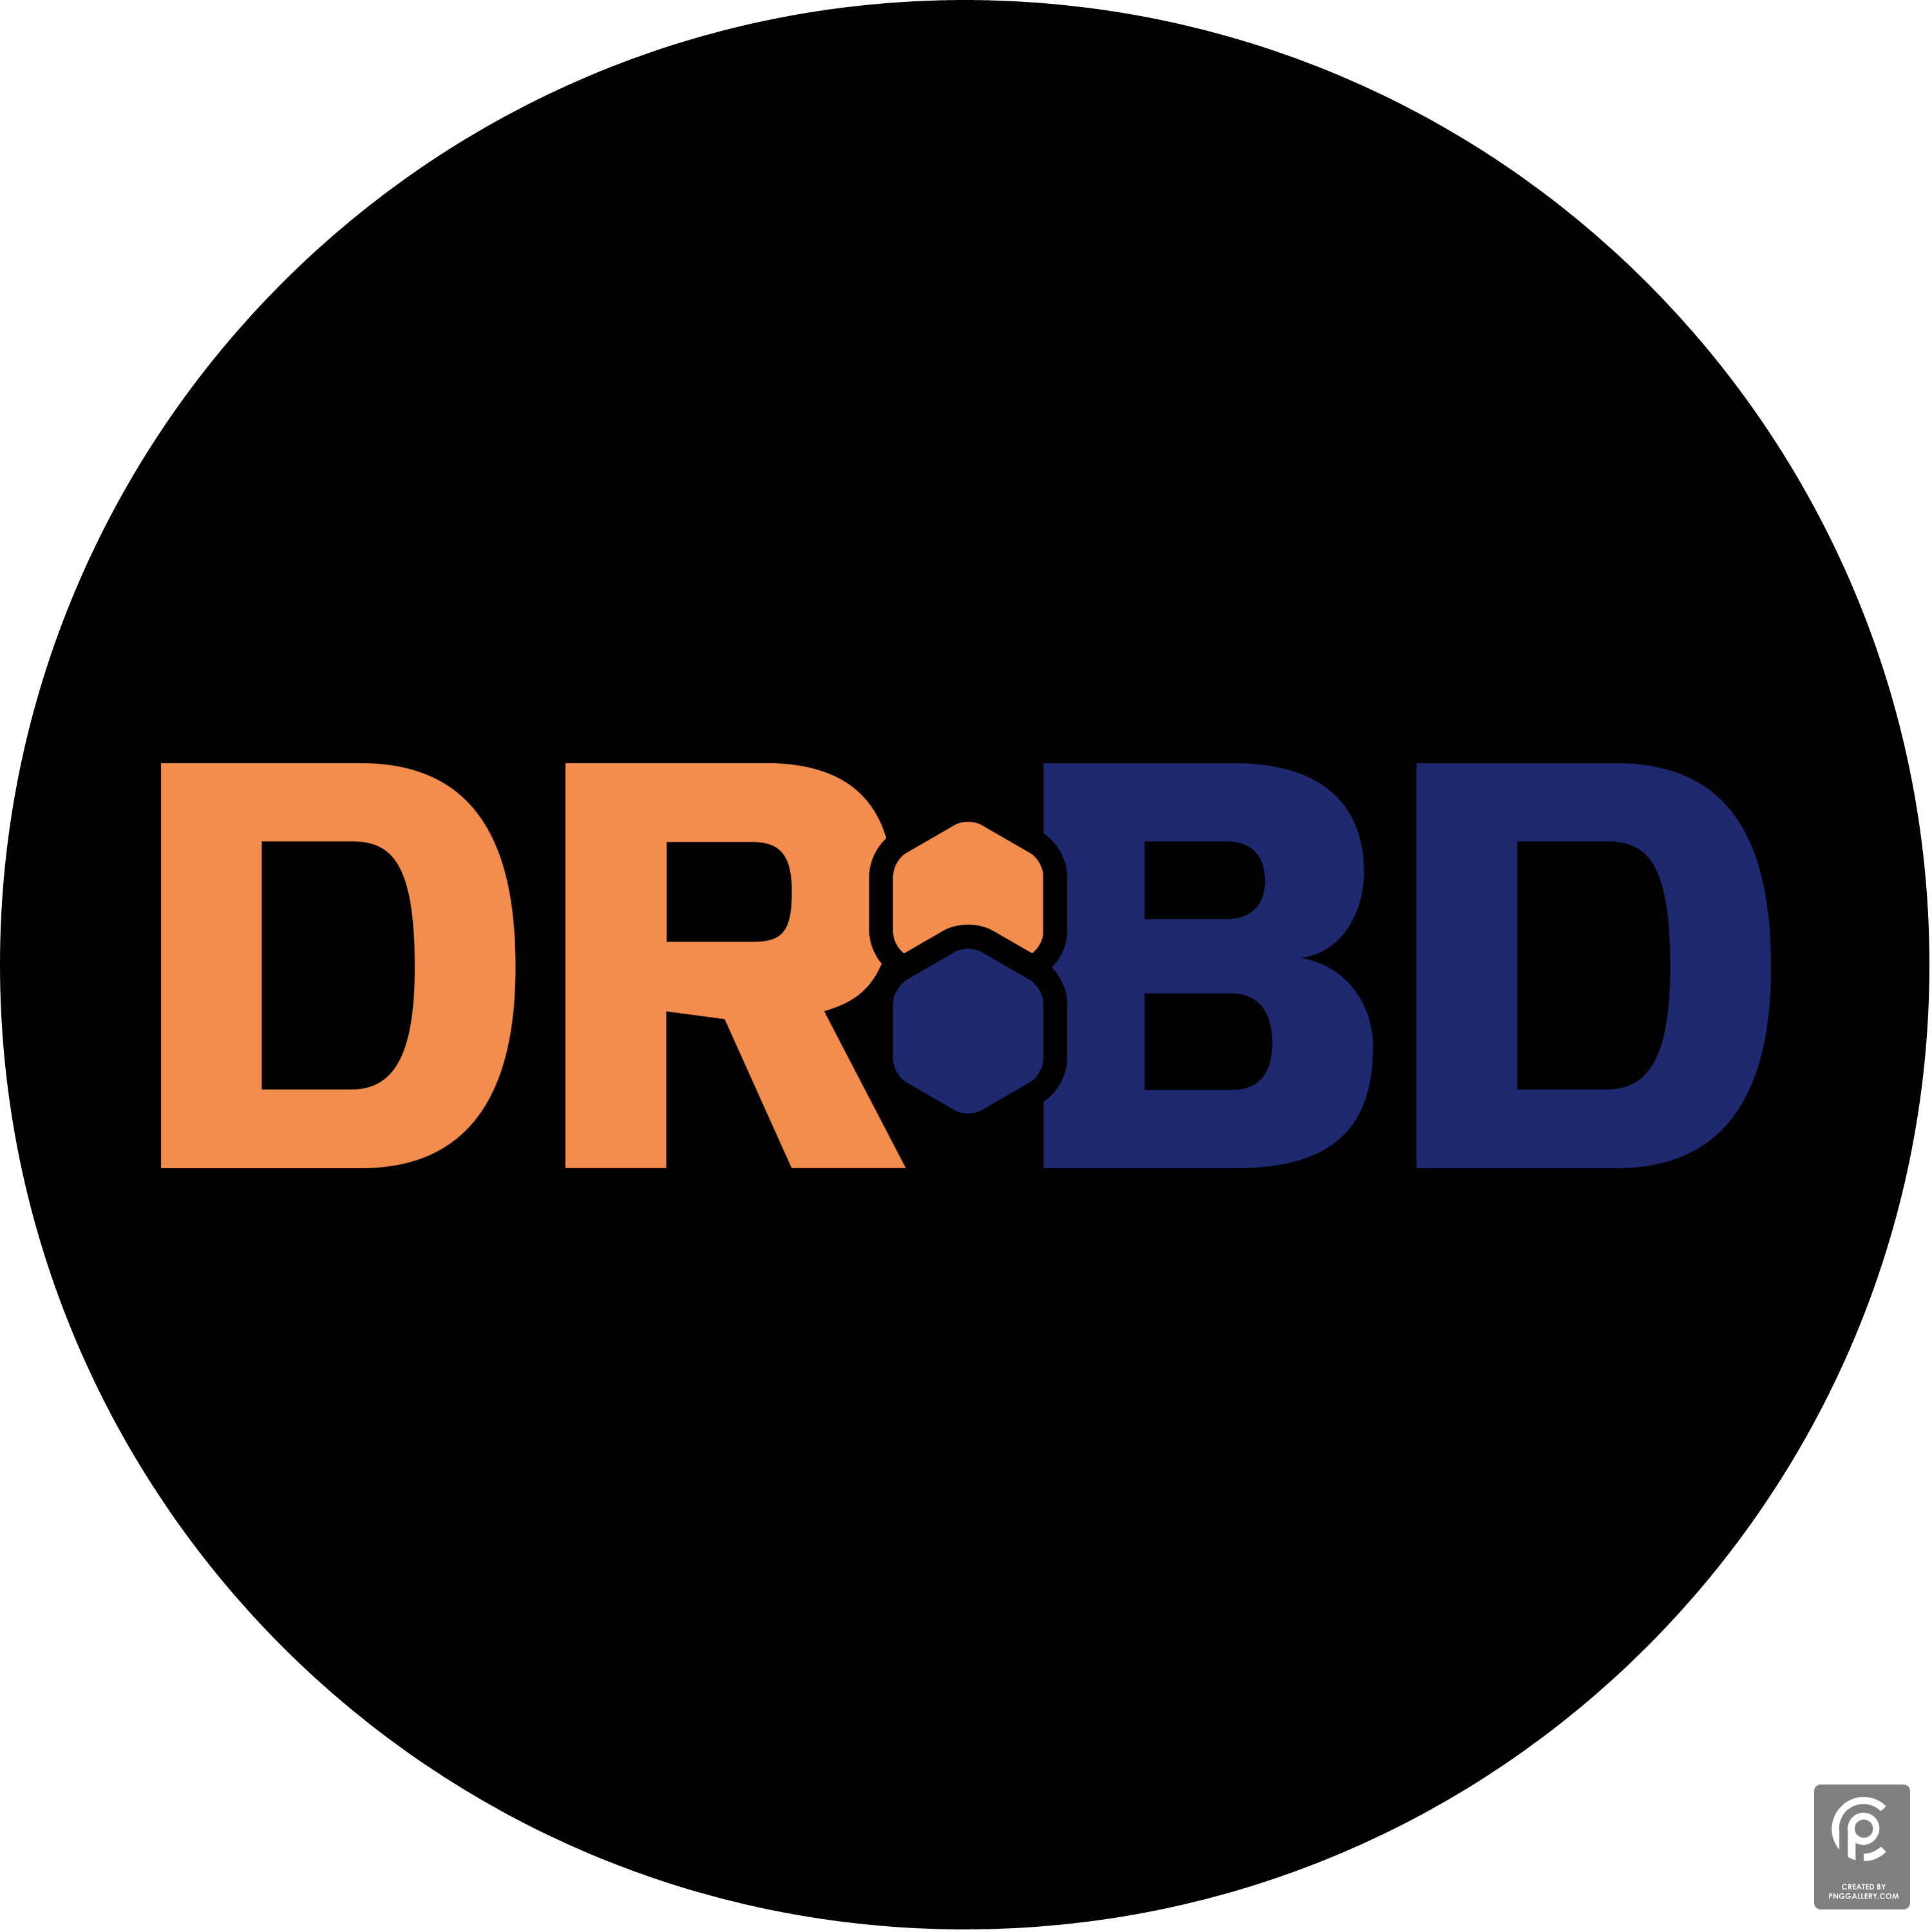 Drbd 2016 Logo Transparent Gallery